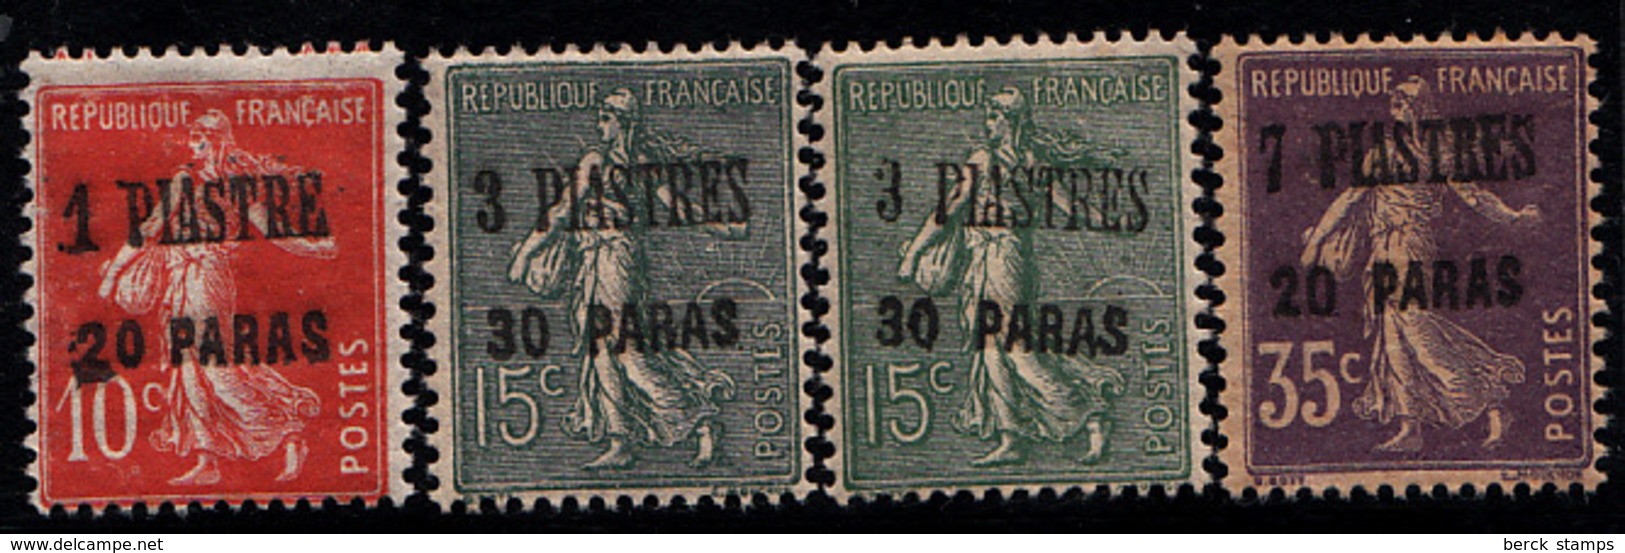 LEVANT - N° 38/40* - 4 VALEURS - VARIETE DE SURCHARGE SUR LE 15c. - Unused Stamps